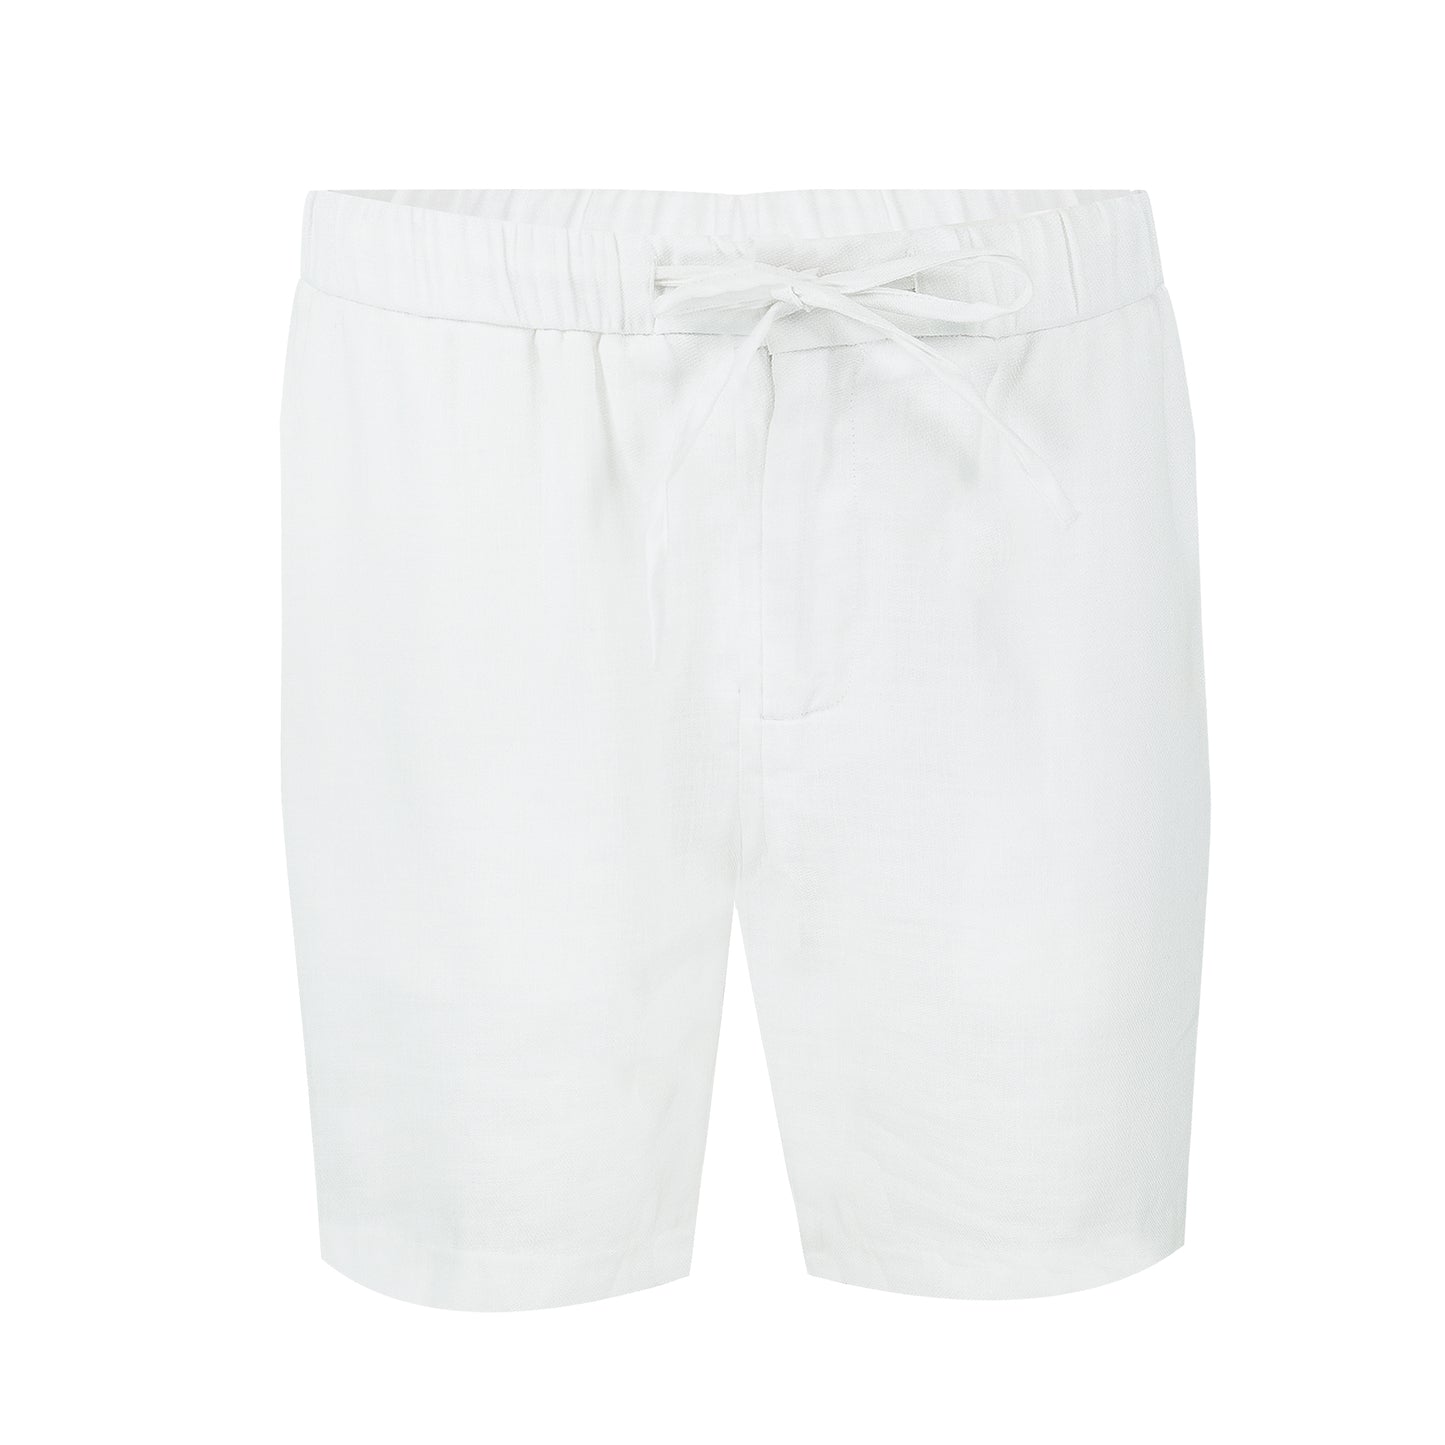 White Linen Shorts for Men